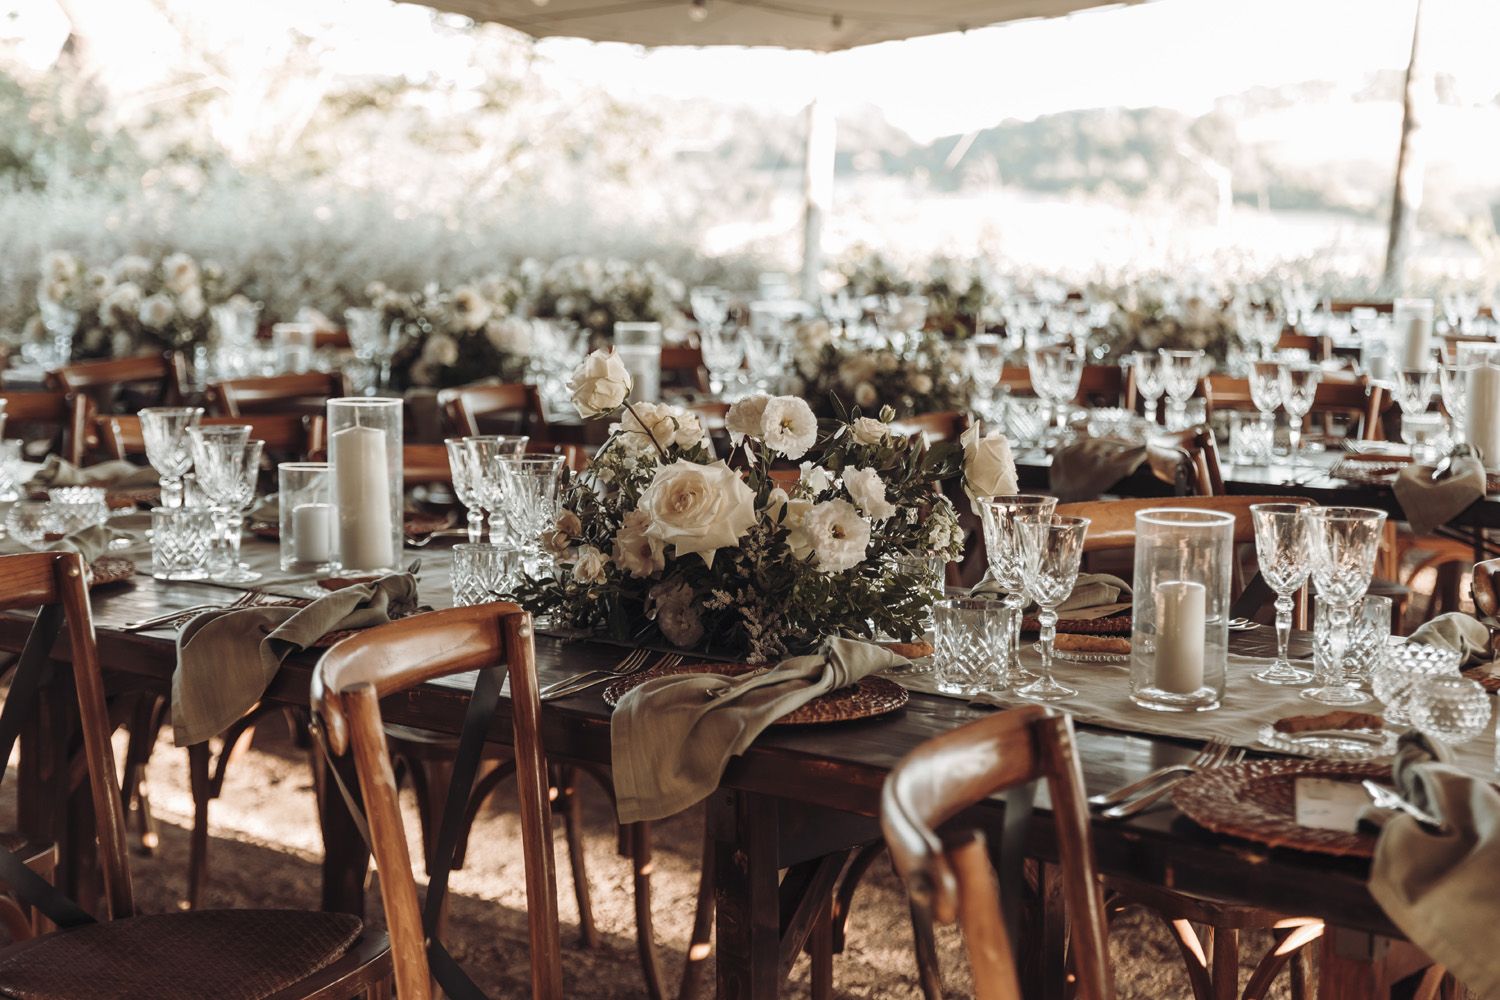 Allestimento tavoli da matrimonio in legno con centrotavola composto da fiori bianchi e verde